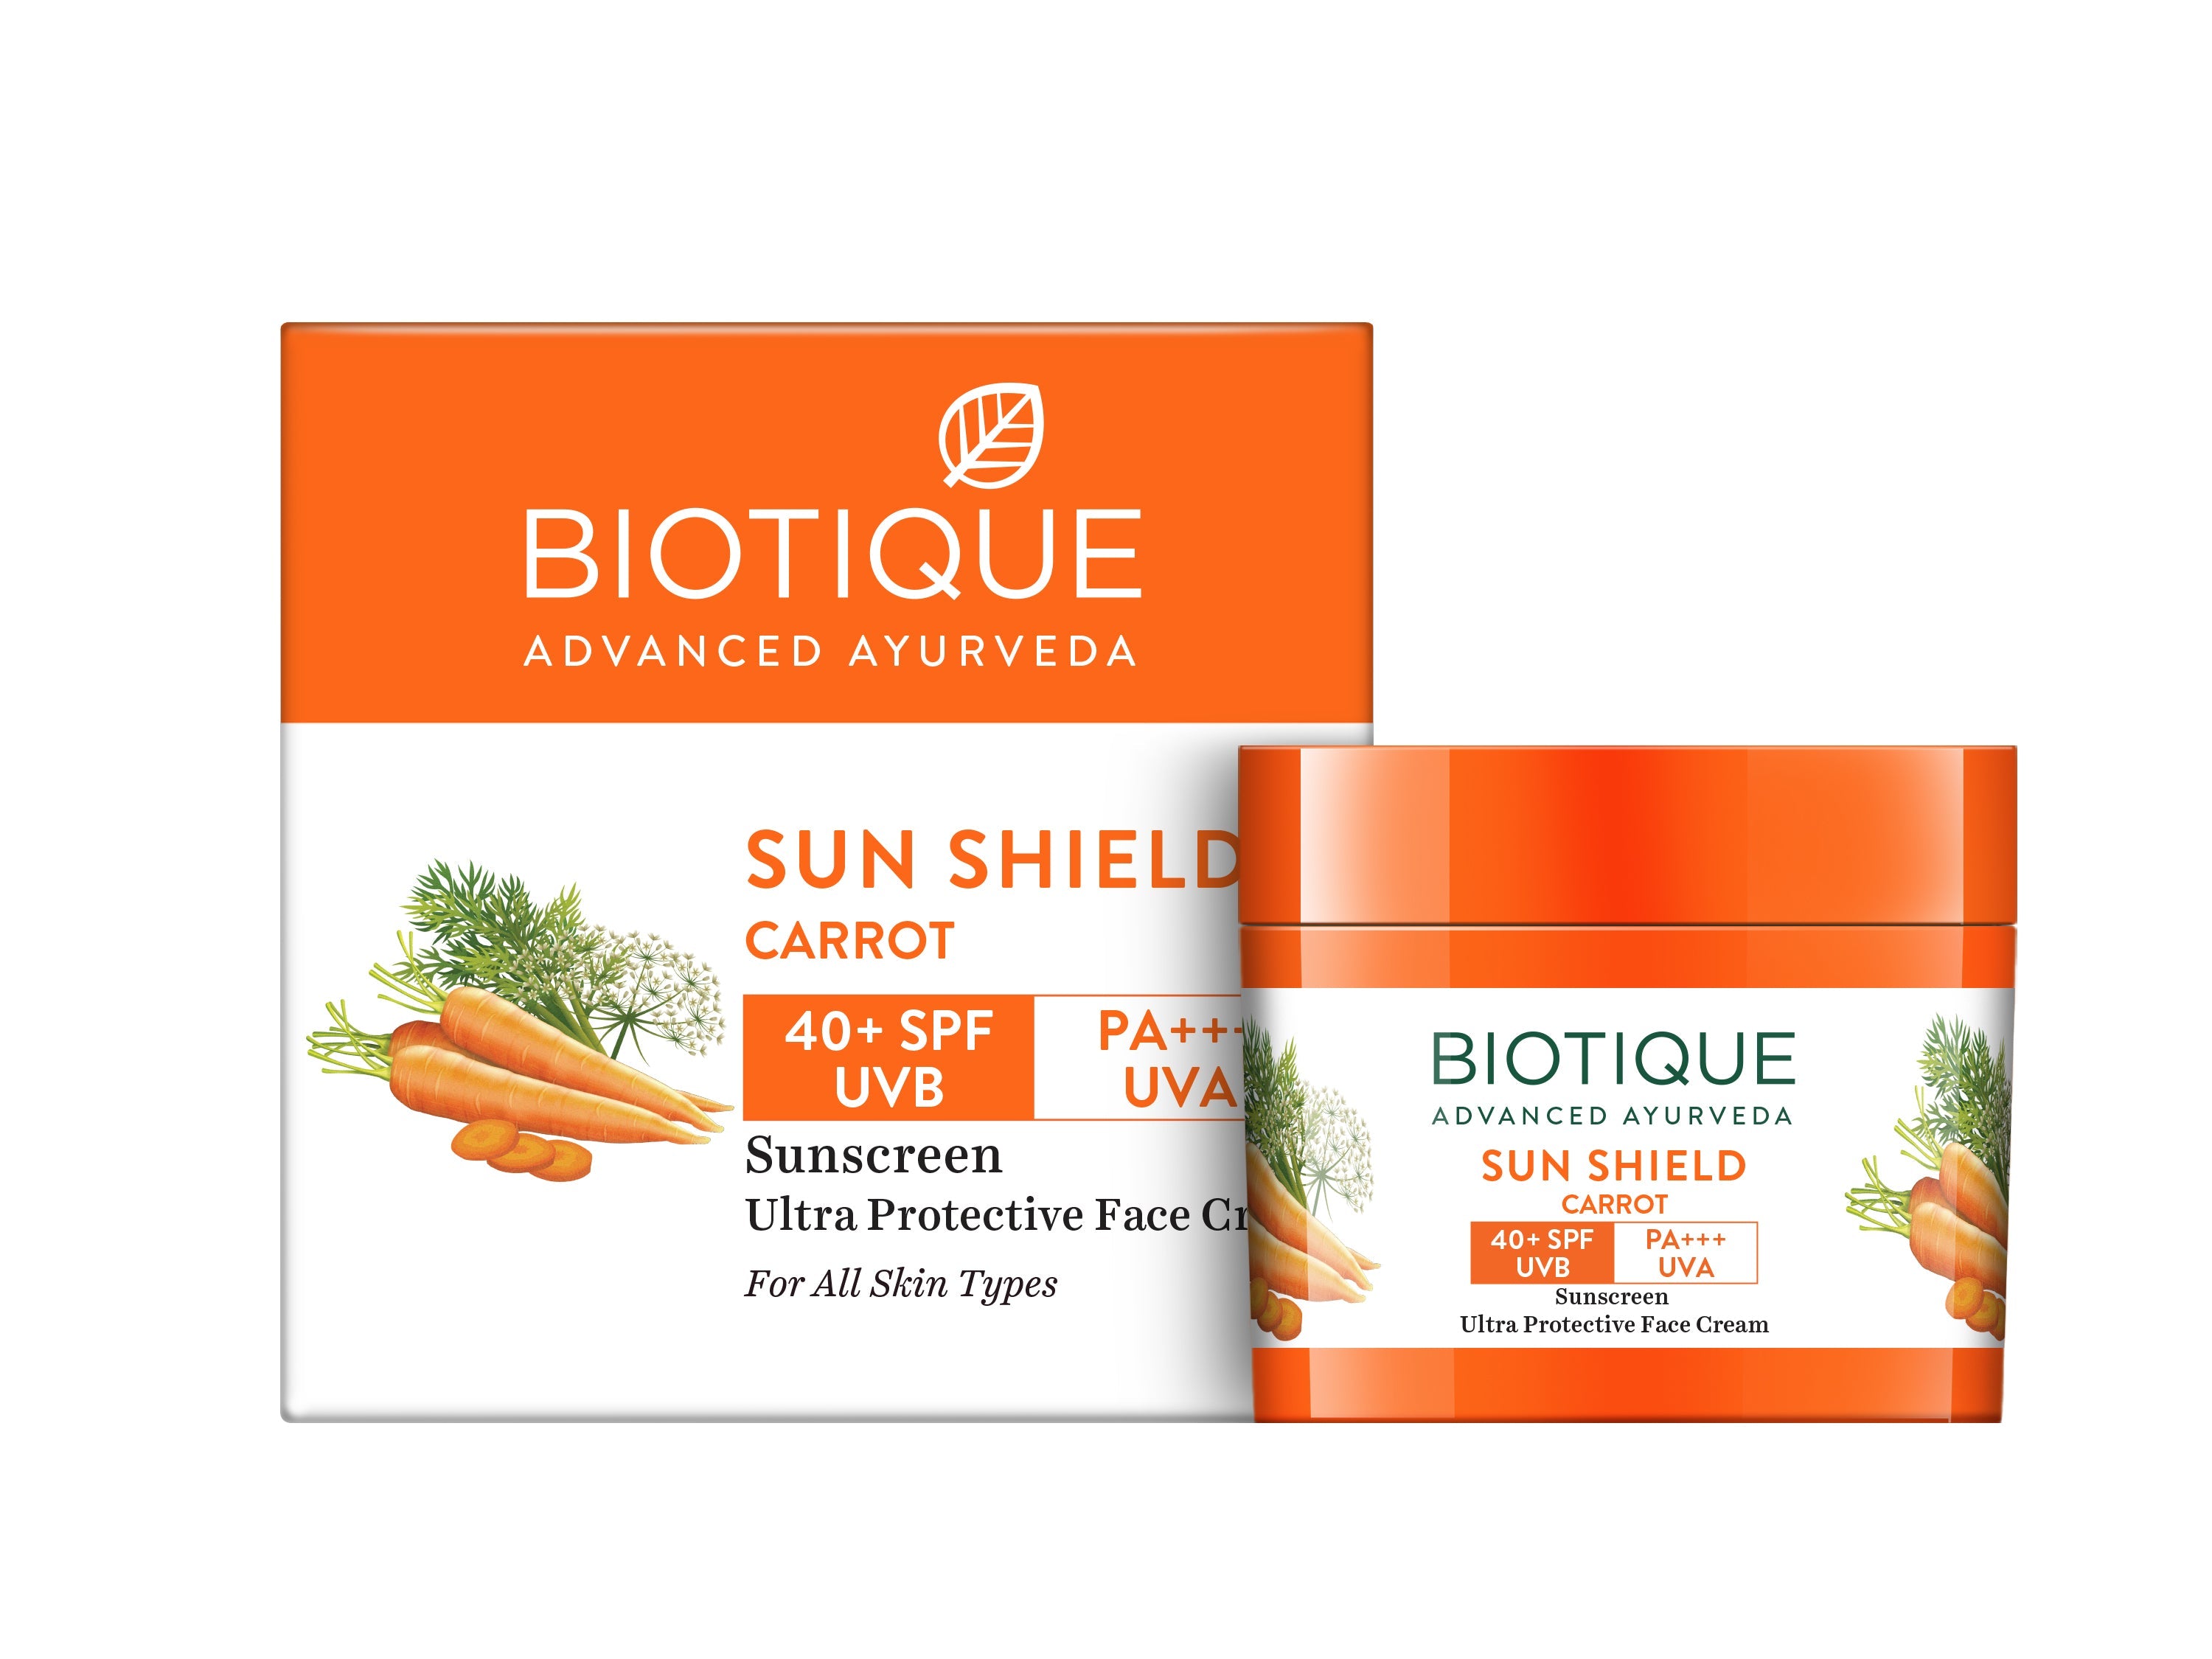 Sun Shield CARROT, 40+ SPF UVA/UVB Sunscreen Ultra Protective Face Cream, Biotique (МОРКОВЬ Ультра-солнцезащитный крем для лица, Для всех типов кожи, Биотик), 50 г.